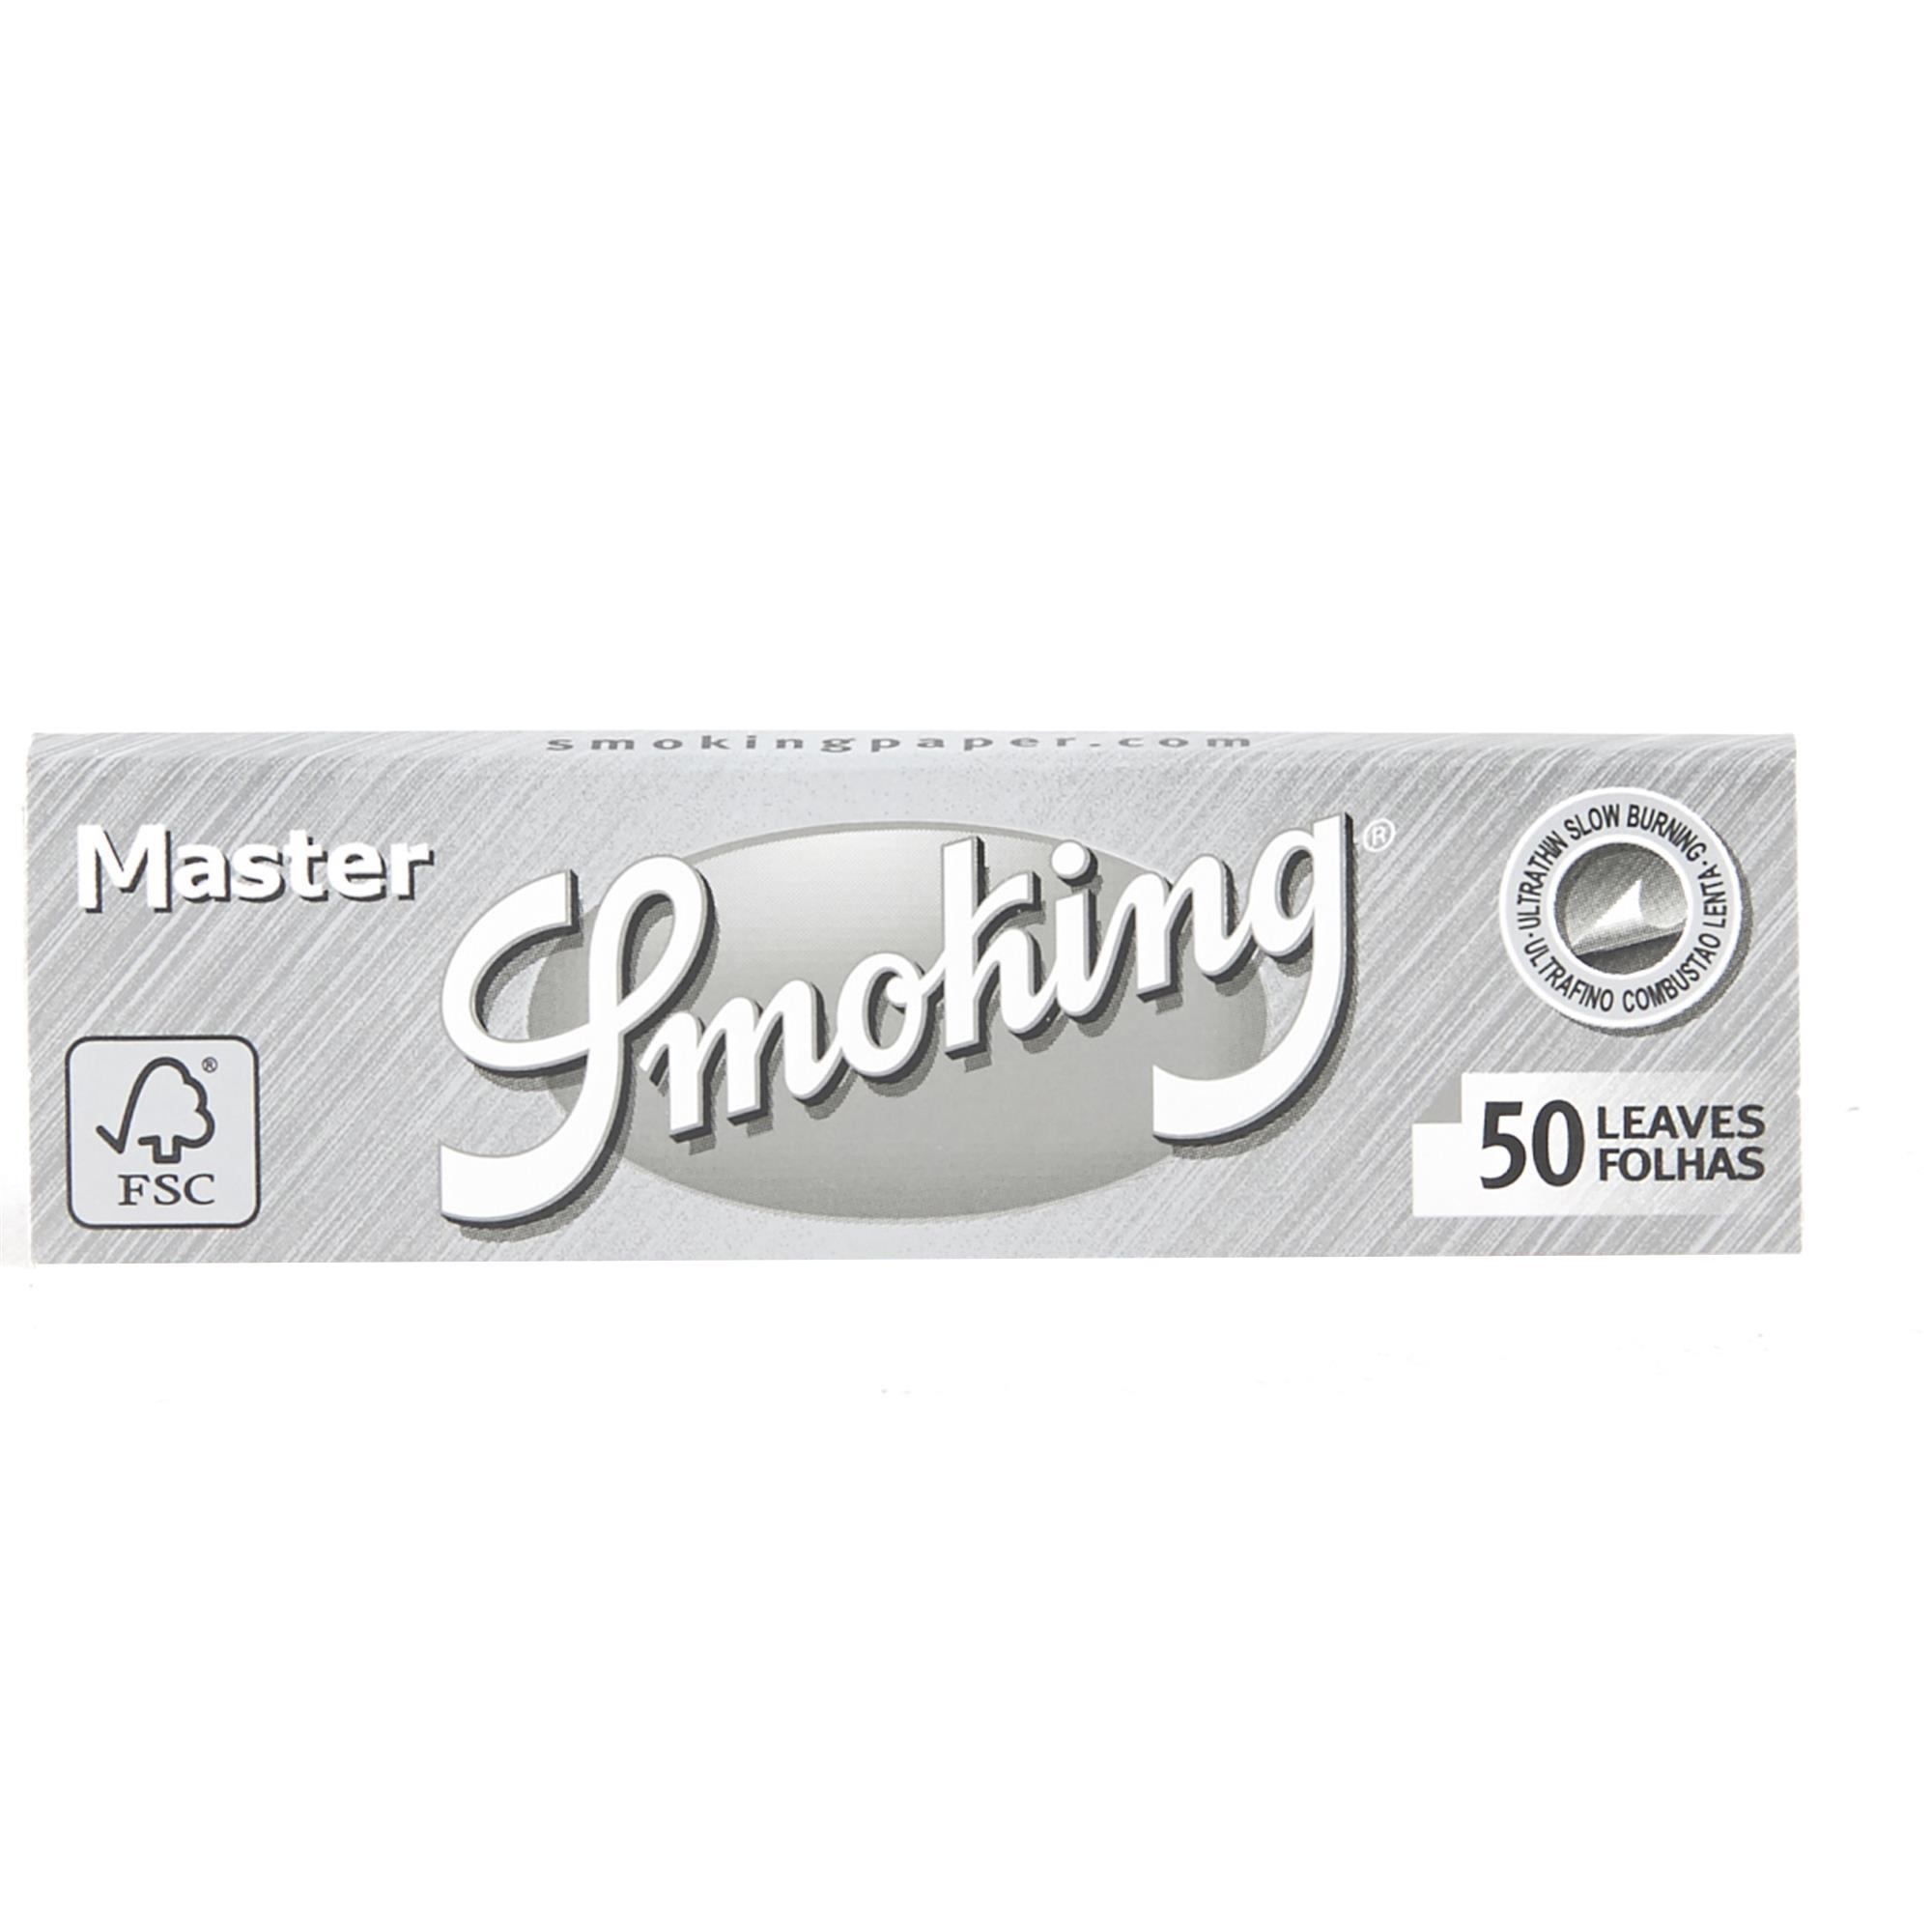 SMOKING MASTER